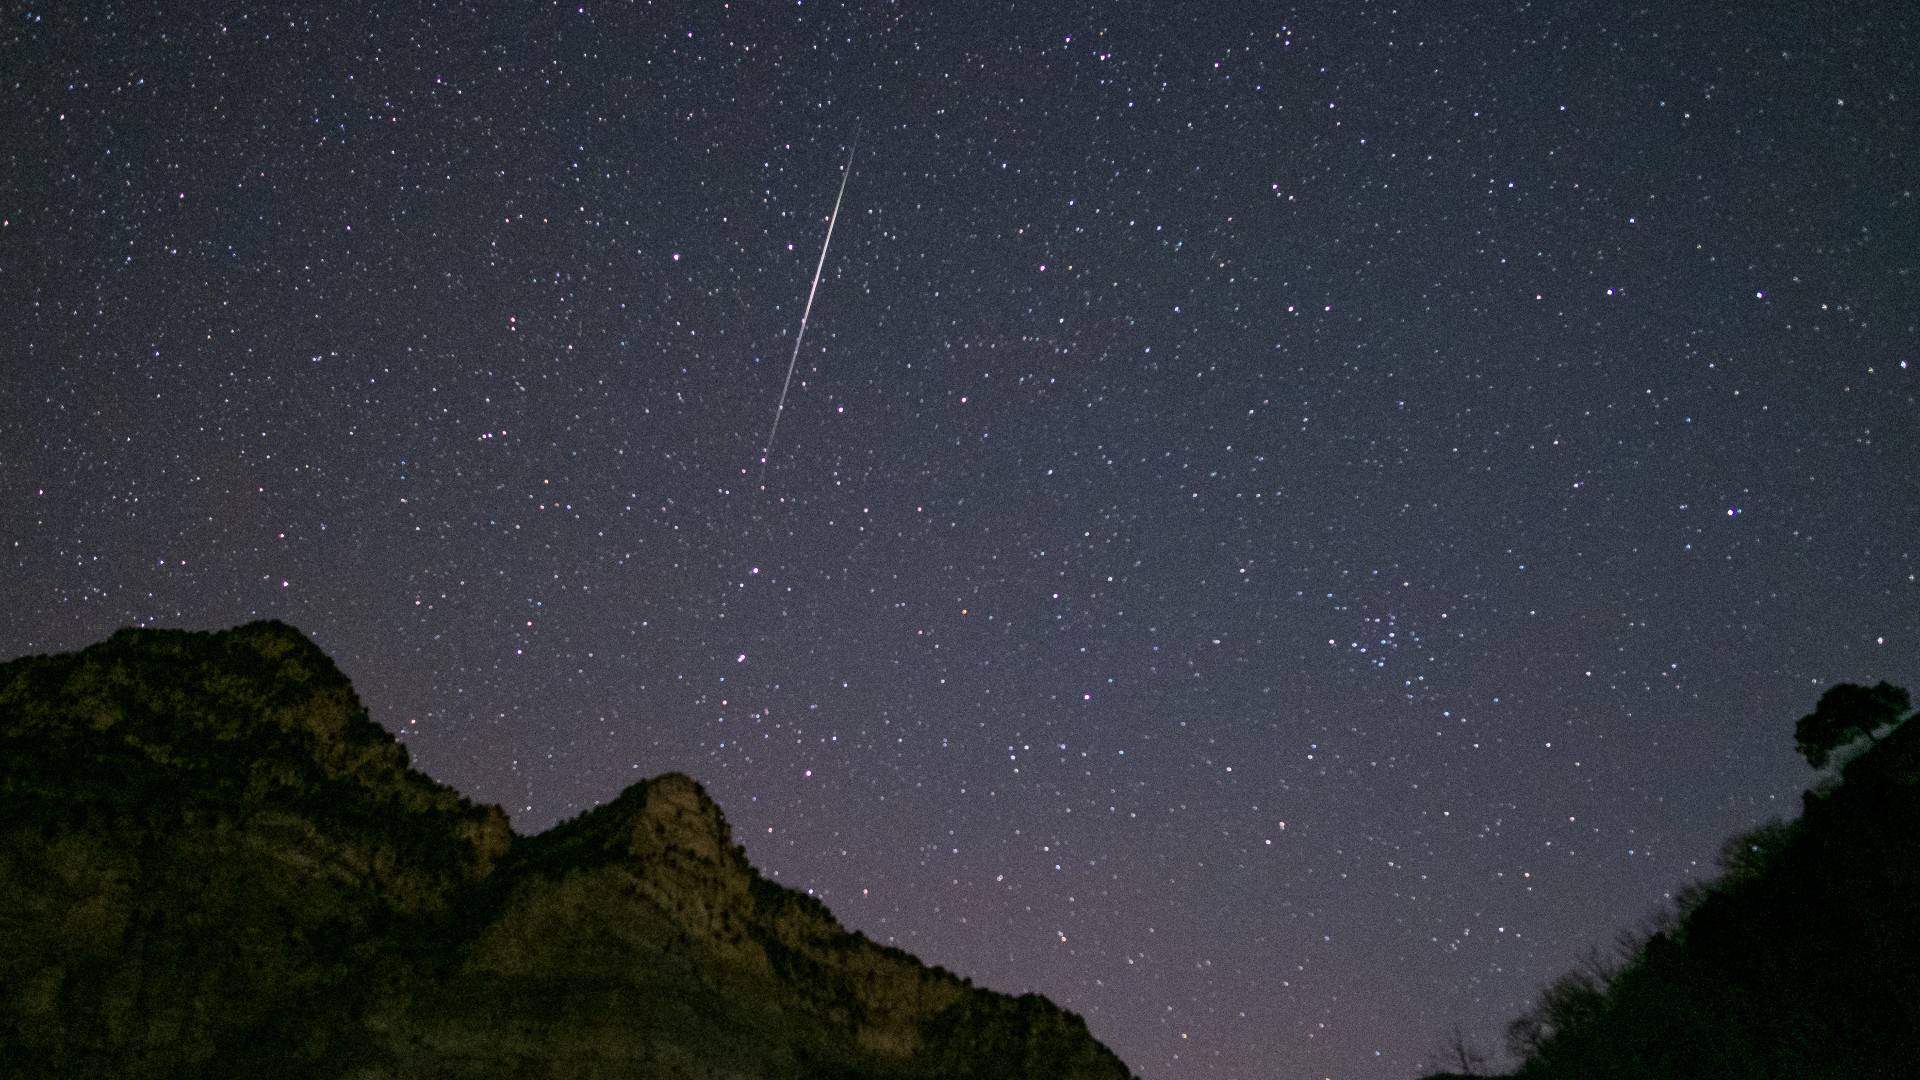 Don't miss the Geminid meteor shower peak next week on Dec. 14